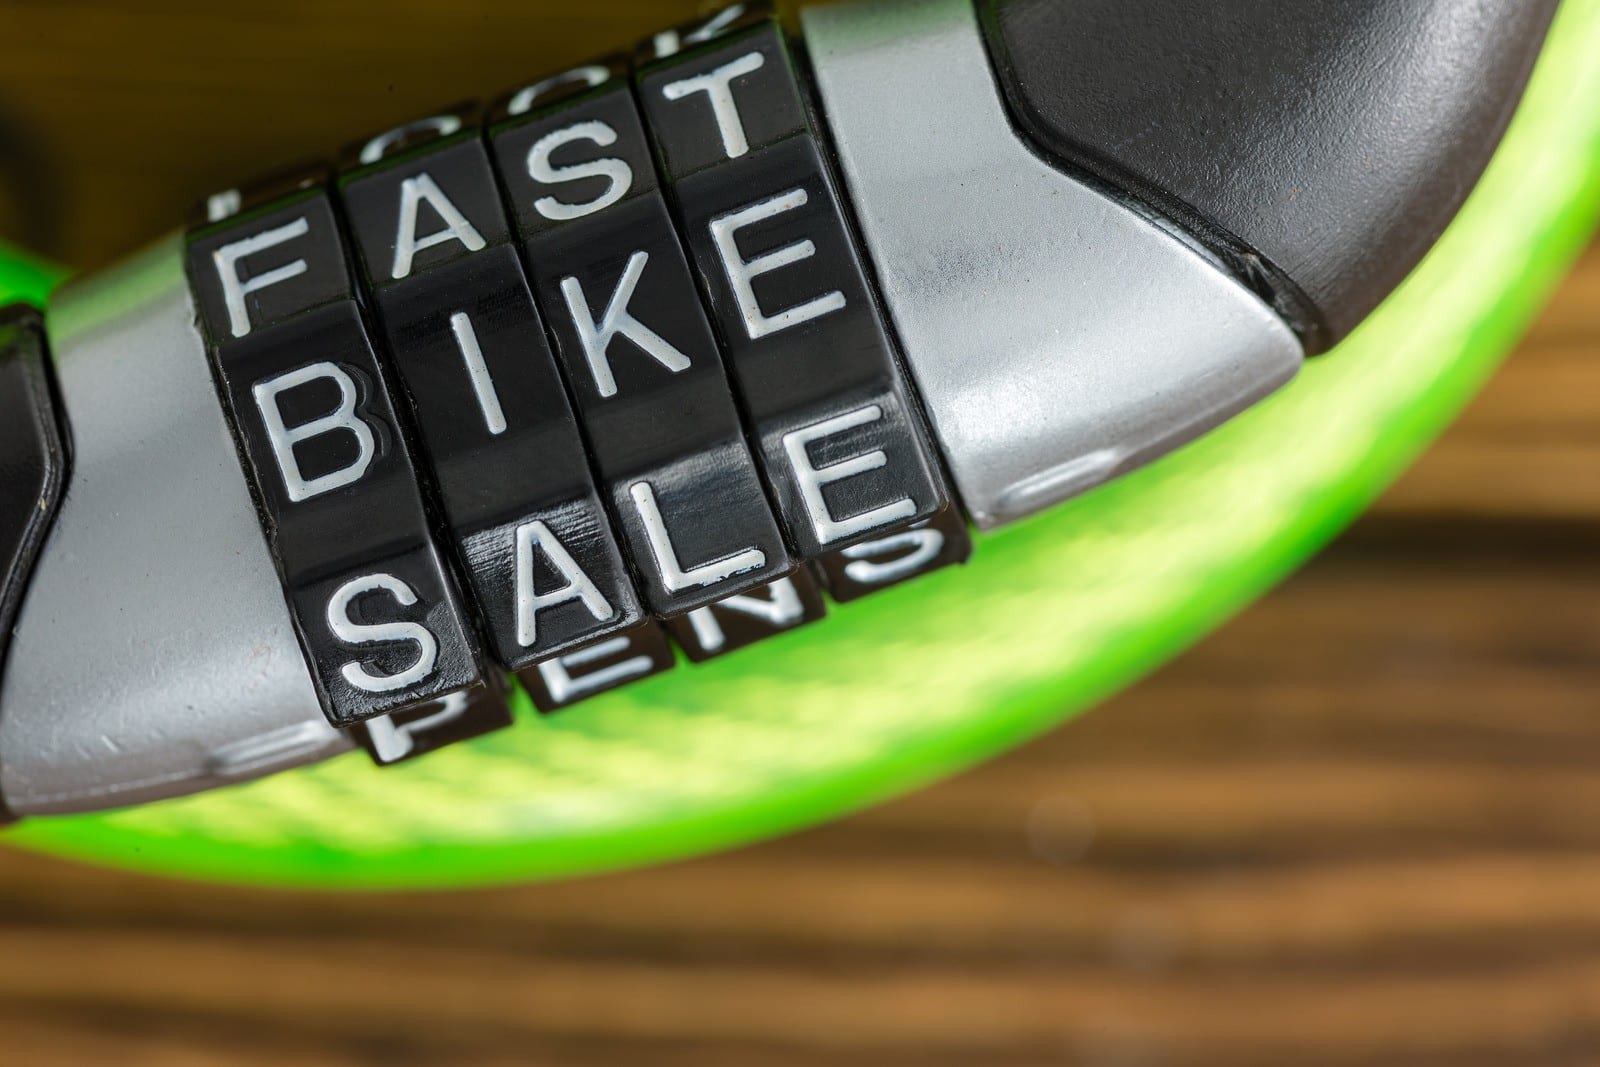 Bike Rental Gear Sale